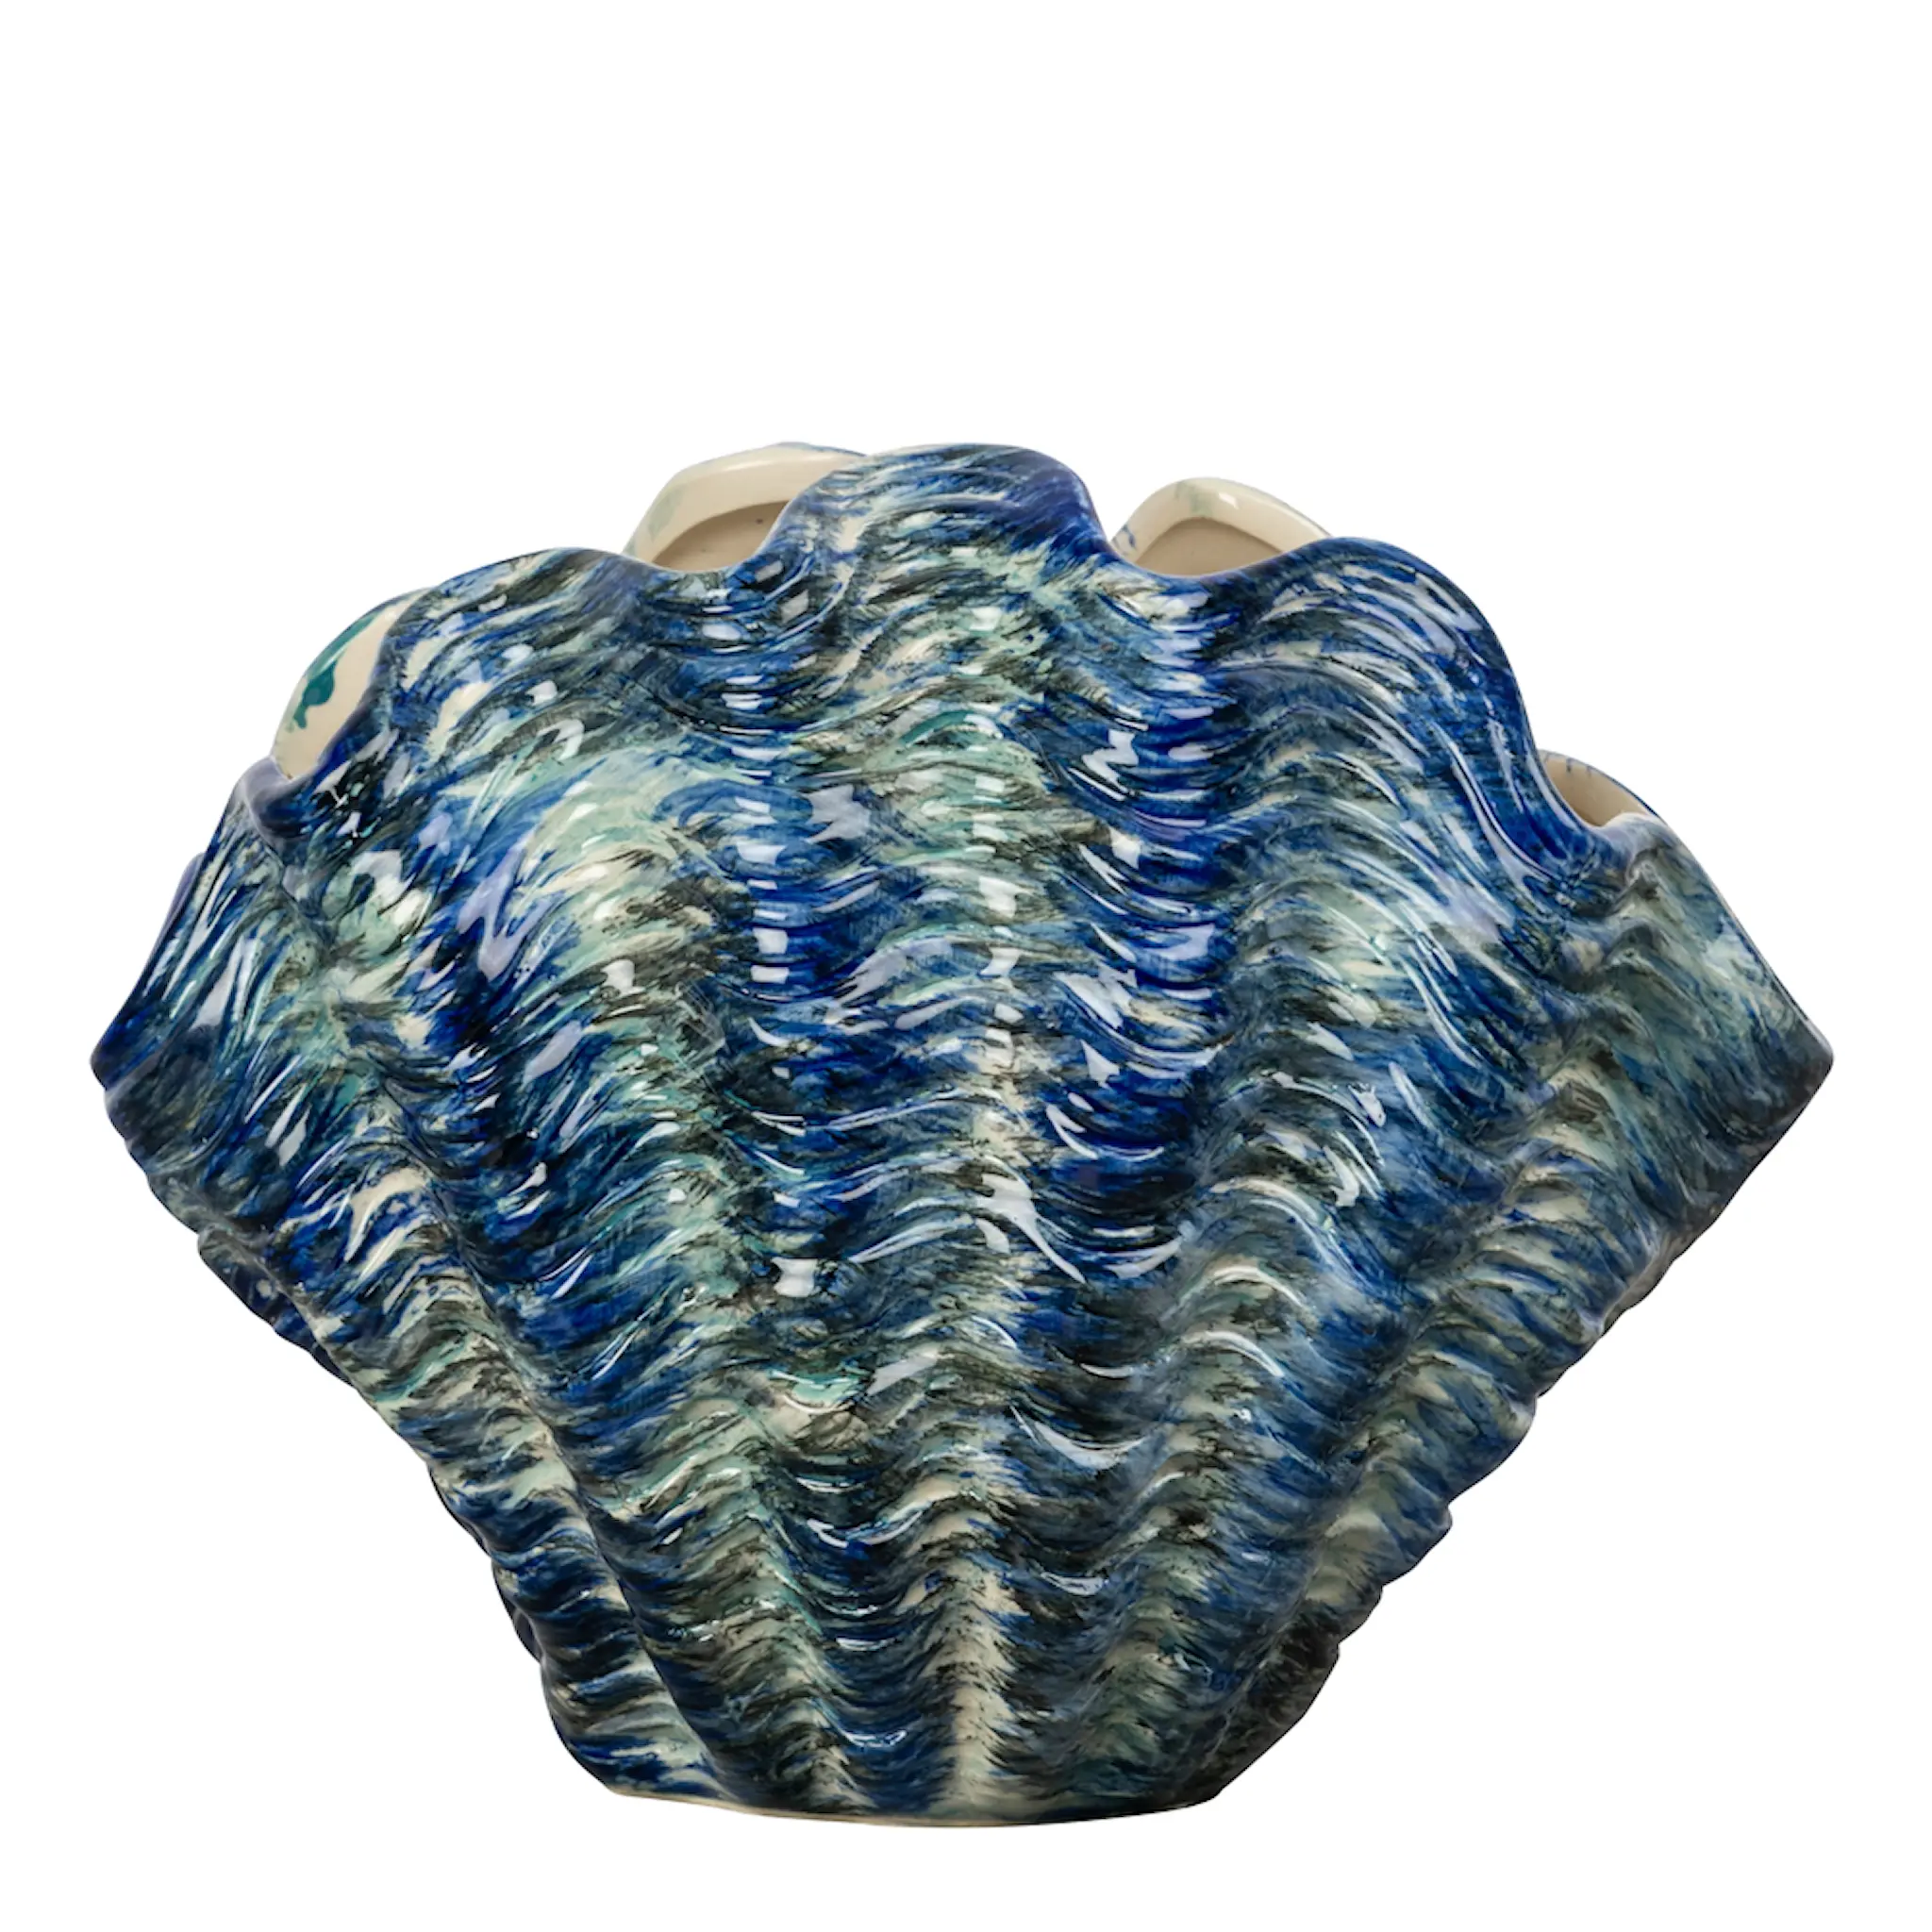 ByOn Mireya vase skjell 27x18 cm blå/grå